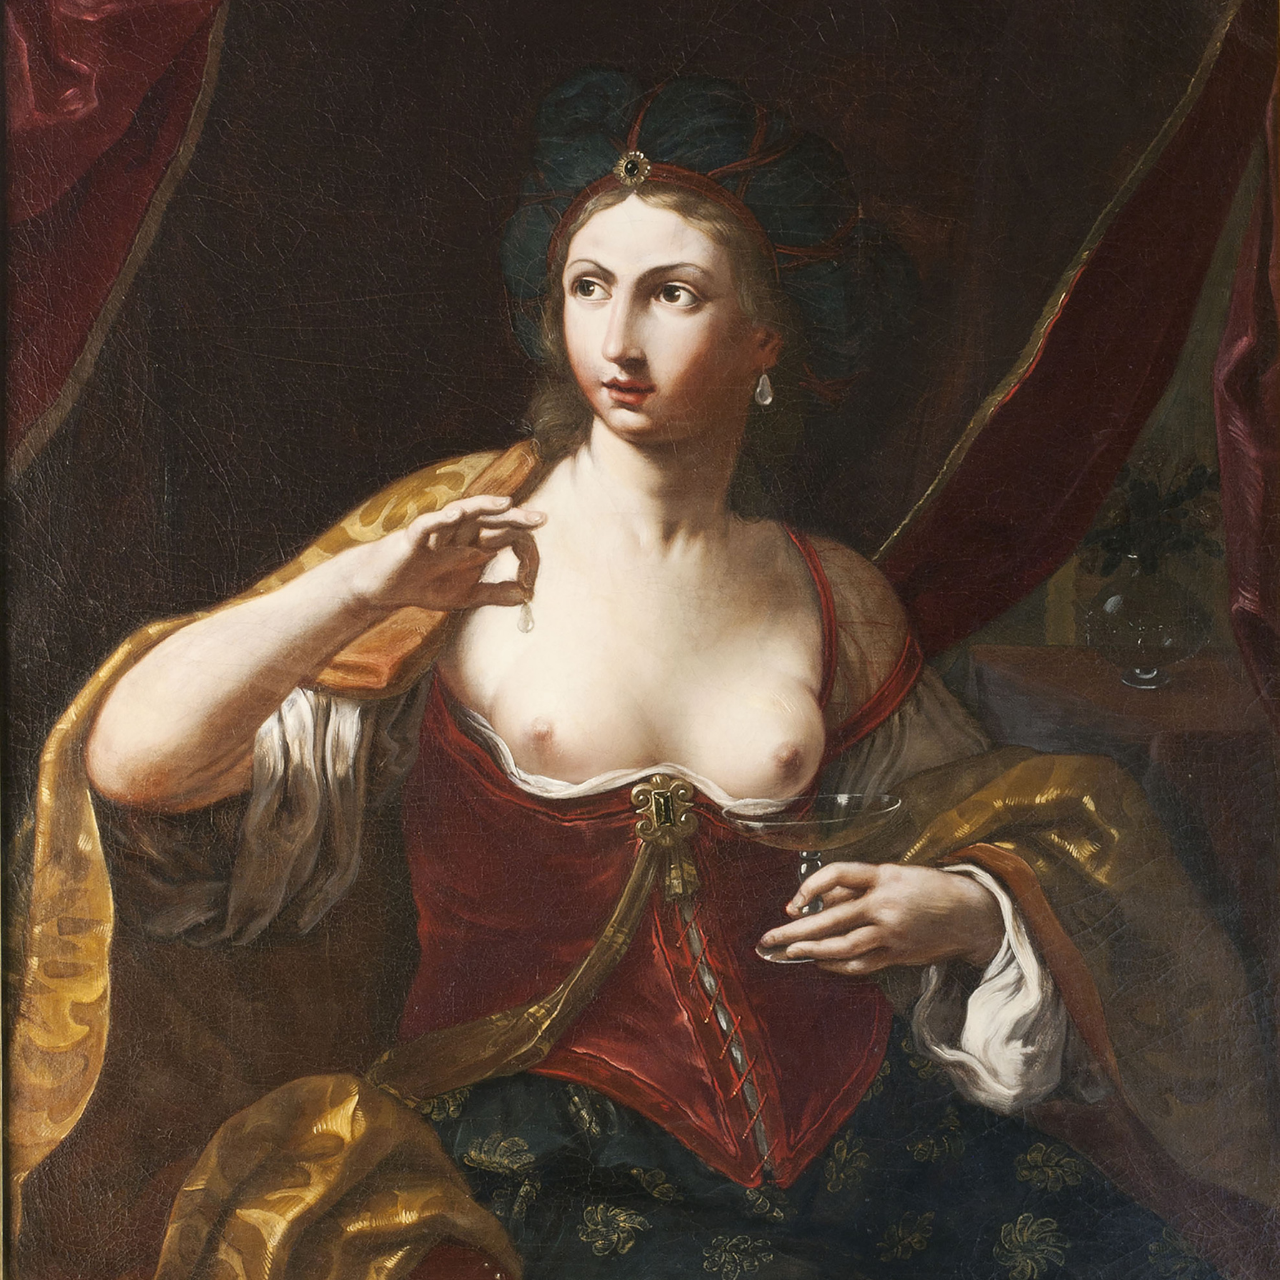 Le Signore dell’Arte. Storie di donne tra ‘500 e ‘600 | Palazzo Reale, Milano